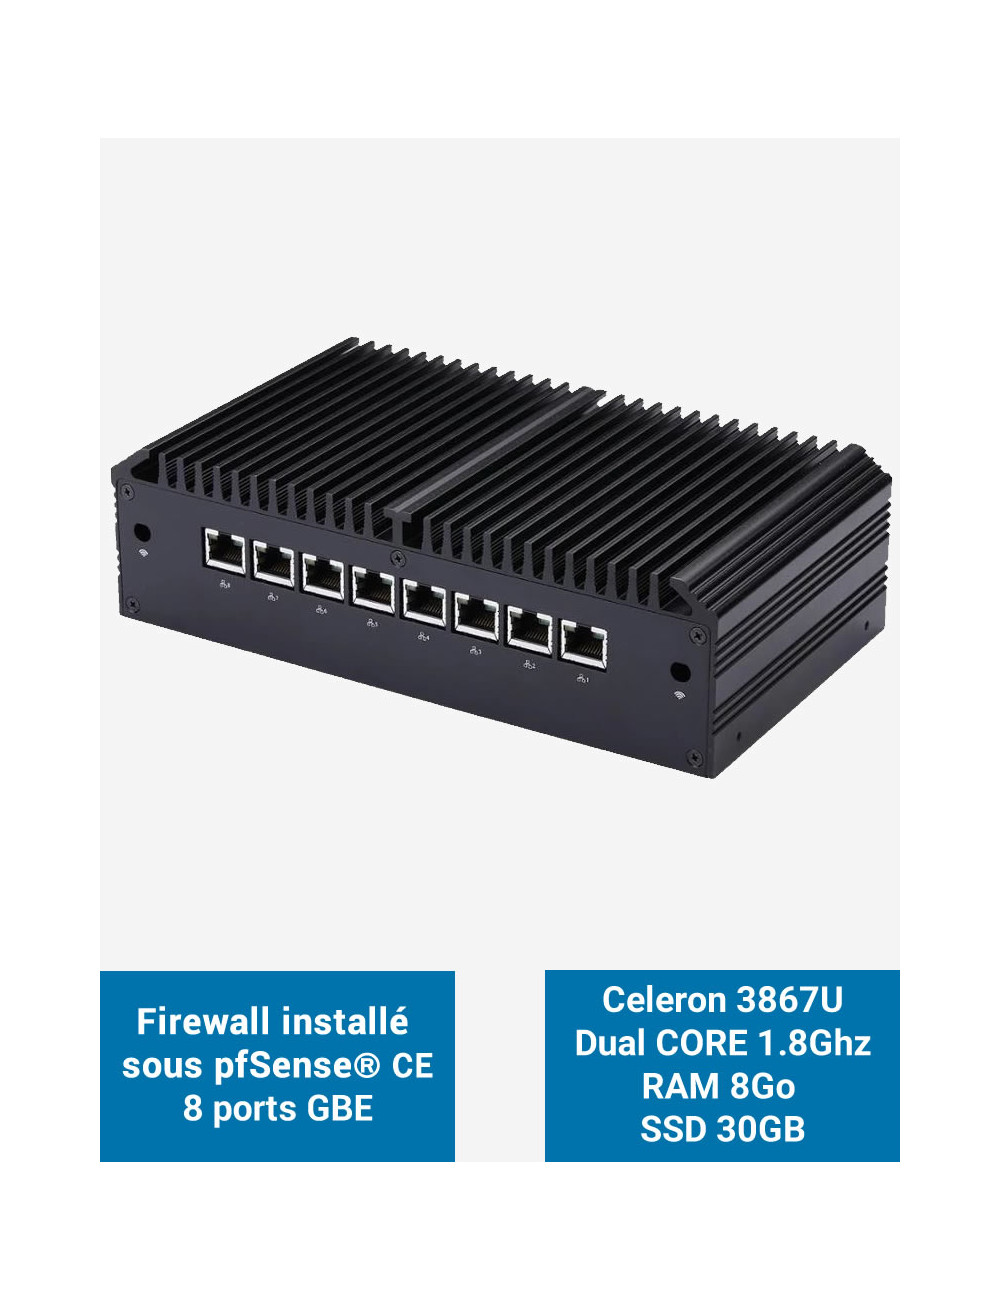 Firewall Q8x Celeron 3867U 8 ports GbE 8GB 30GB